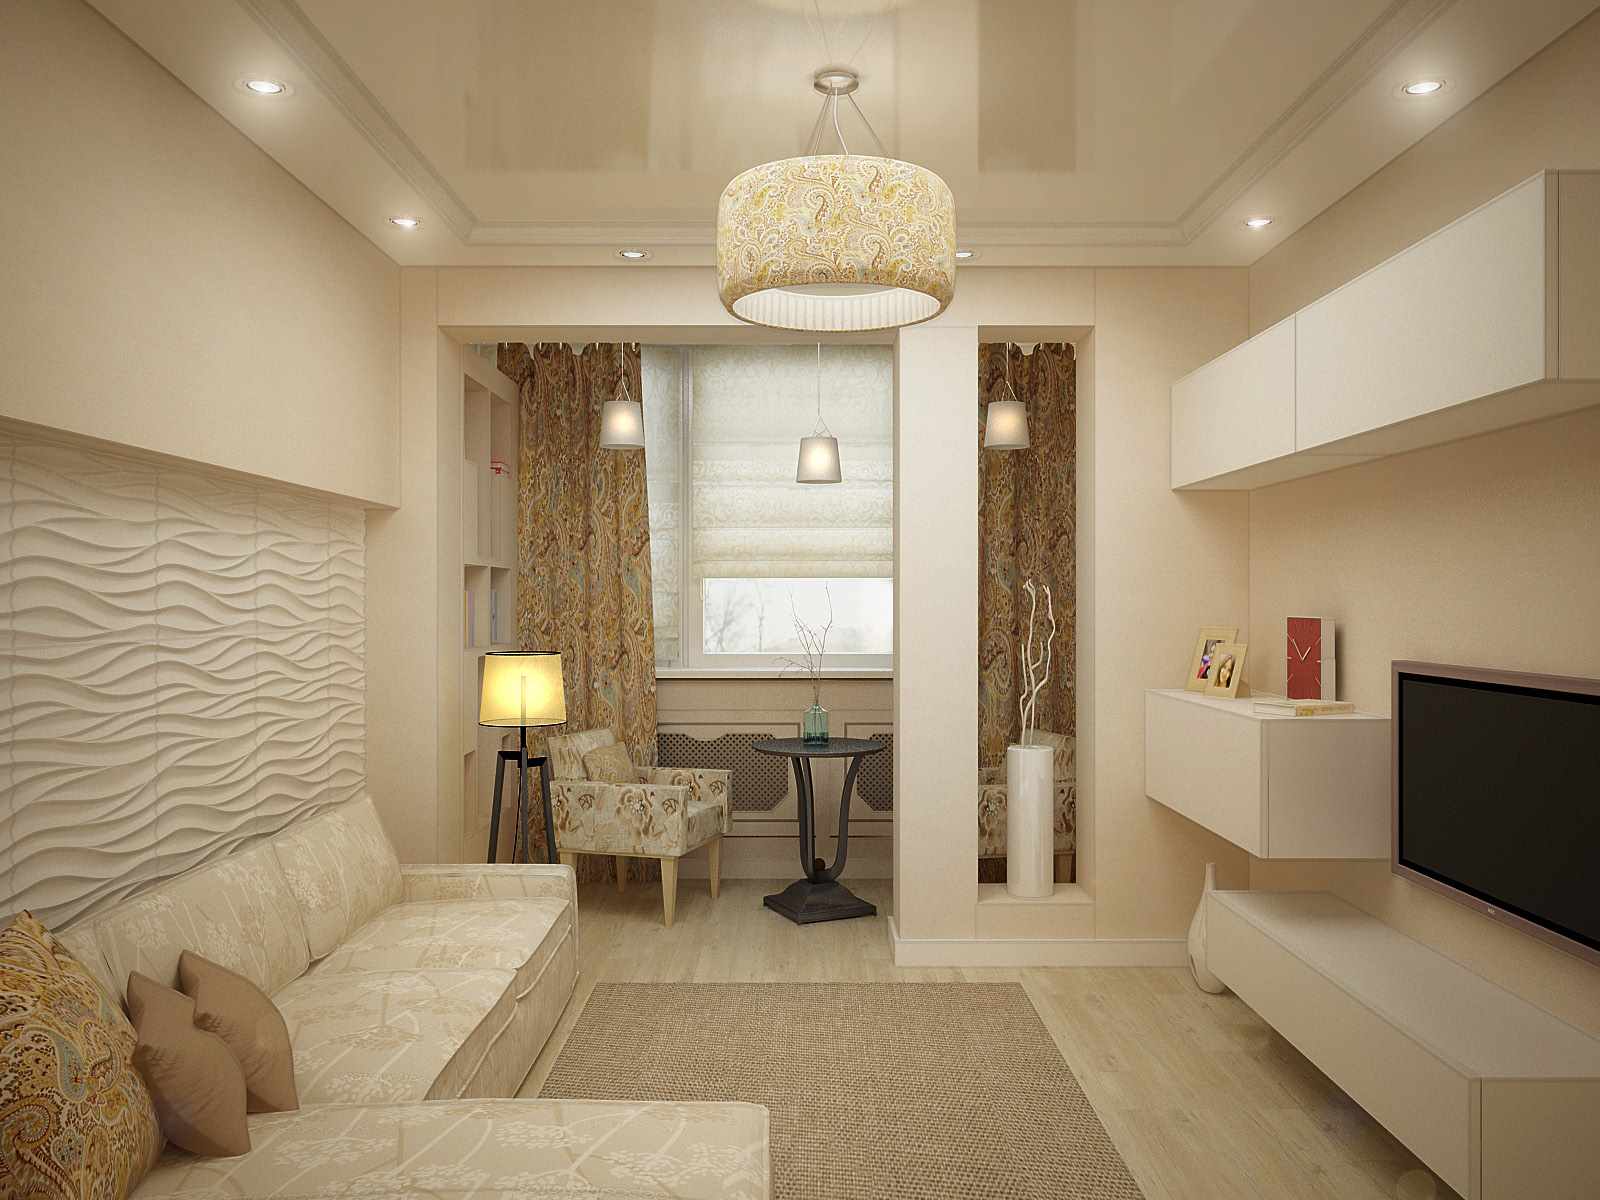 idén om en ljus design av ett vardagsrum på 17 kvm